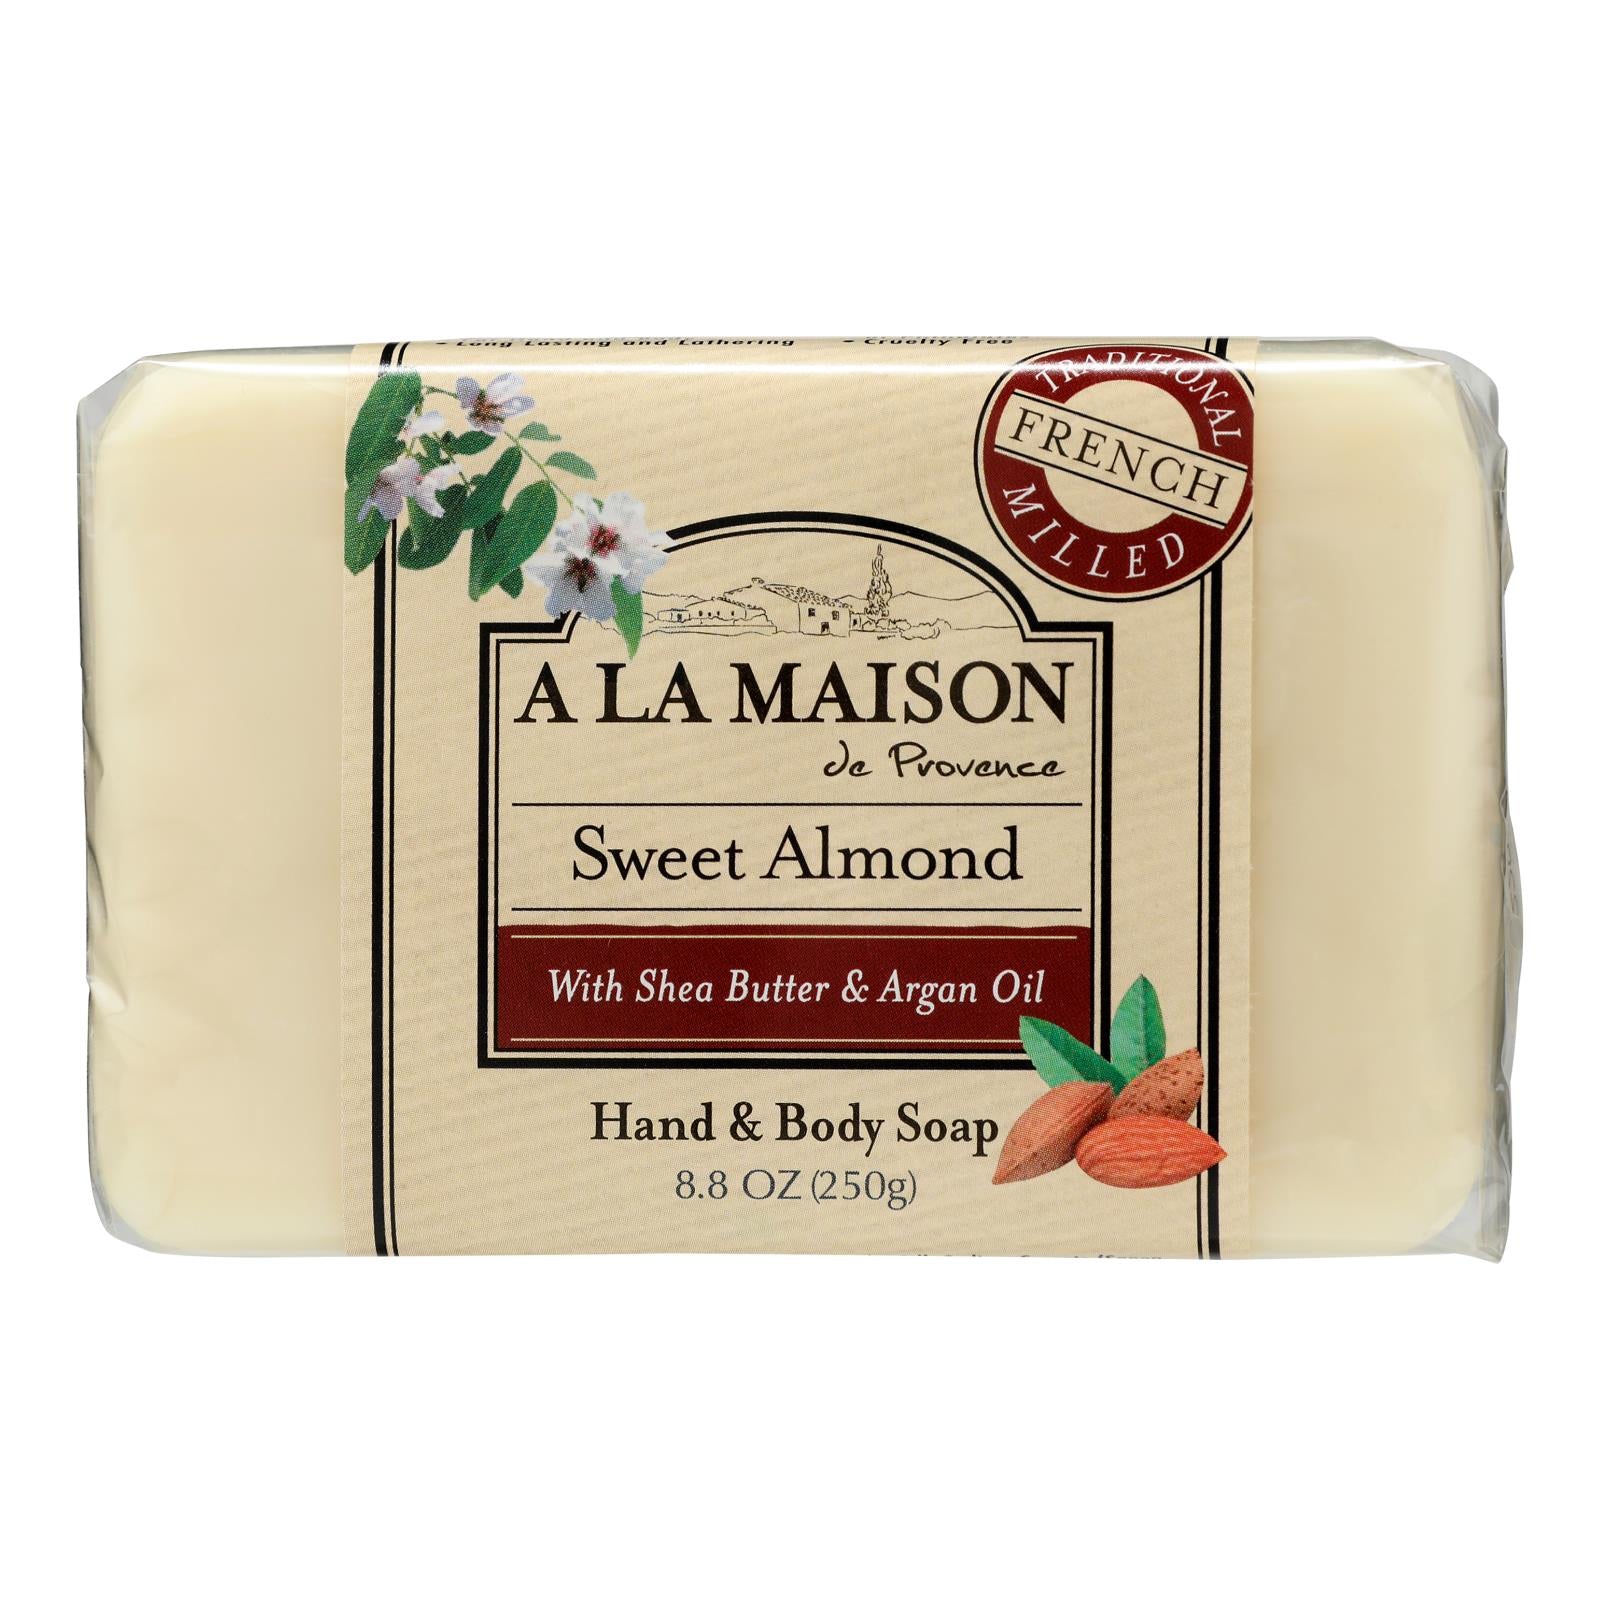 A La Maison - Bar Soap - Sweet Almond - 8.8 Oz